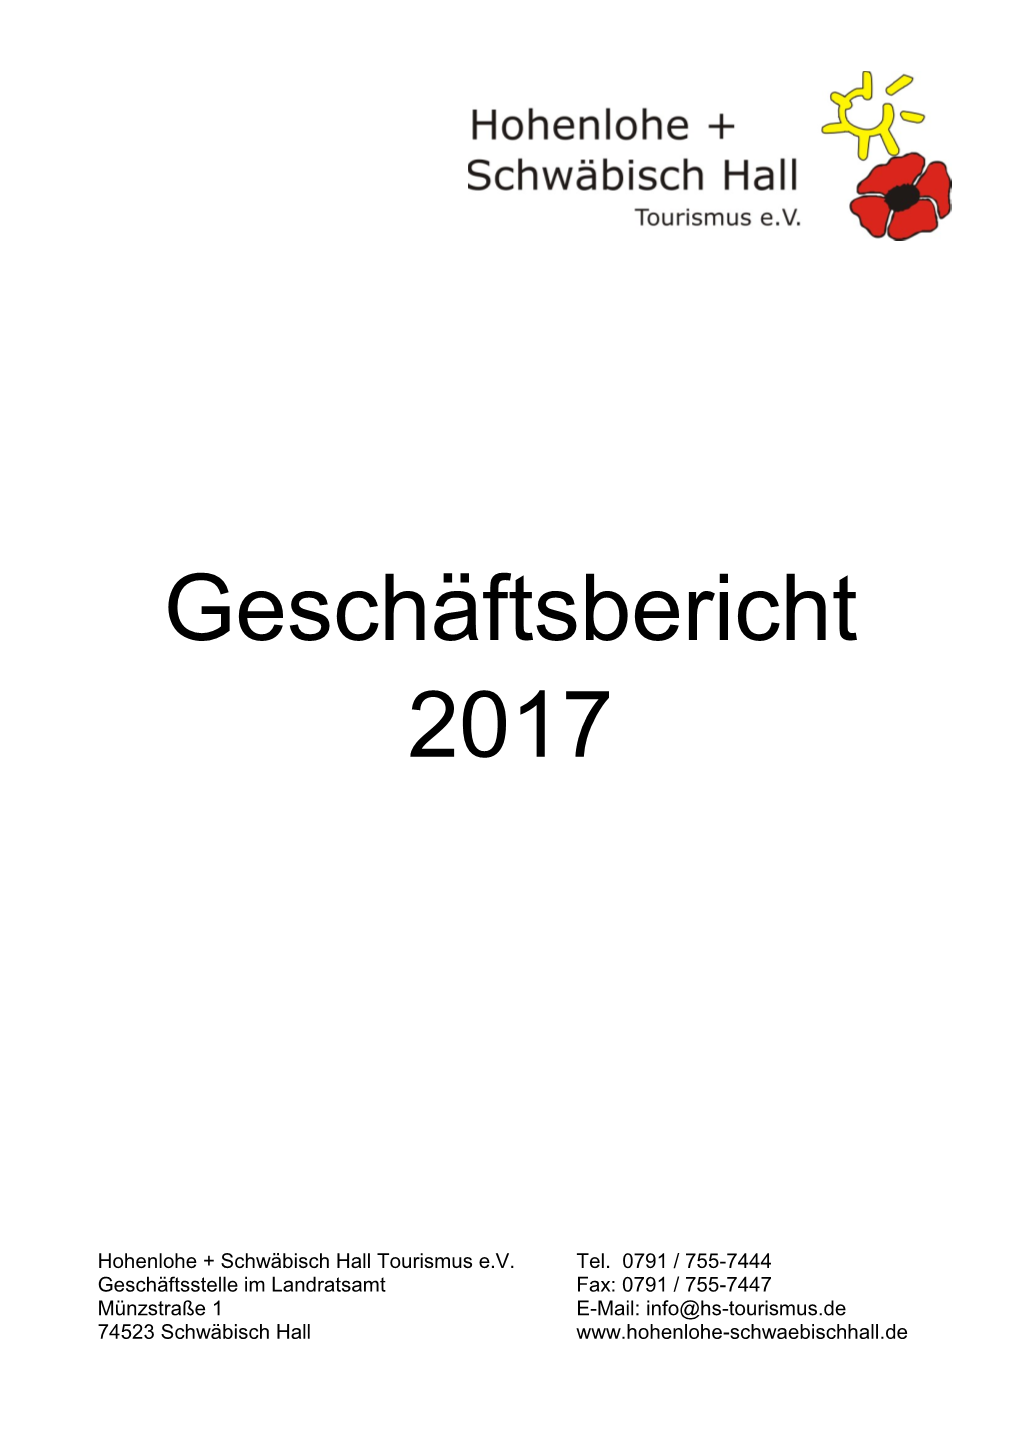 Geschäftsbericht 2017